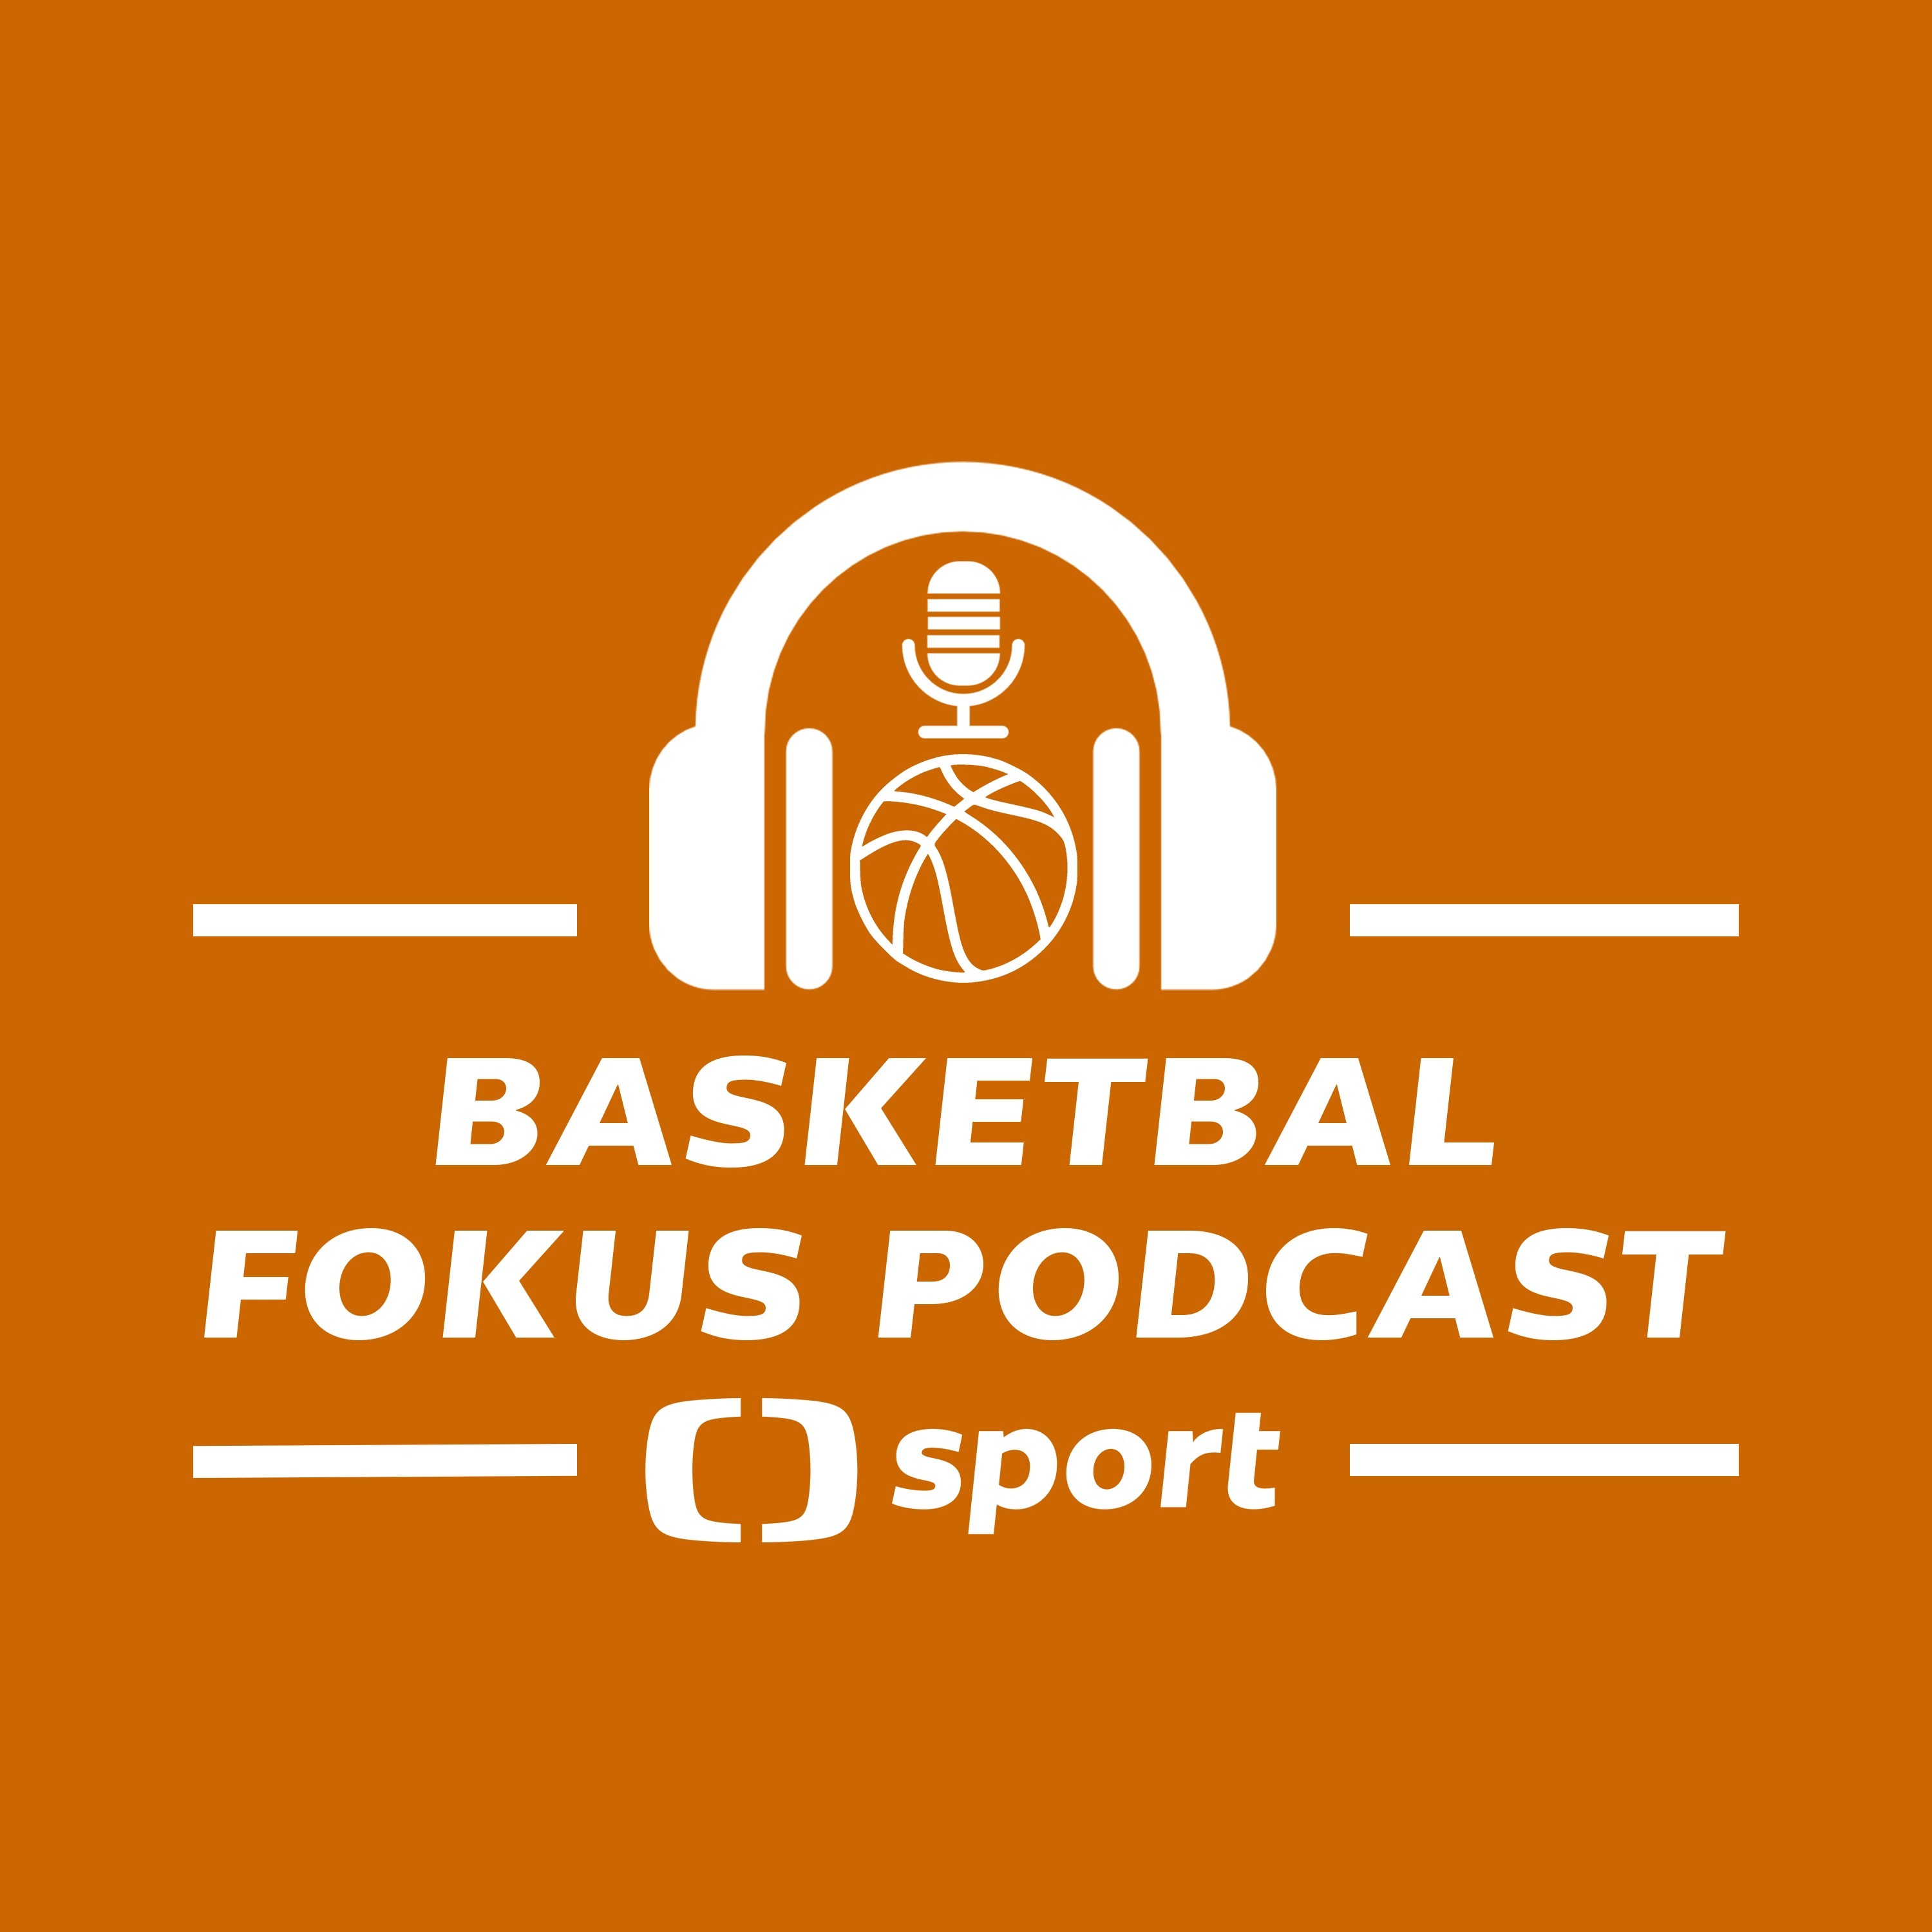 Basketbal fokus podcast: Dozvuky finále a draftu NBA. Čeká nás třaskavé přestupové léto?